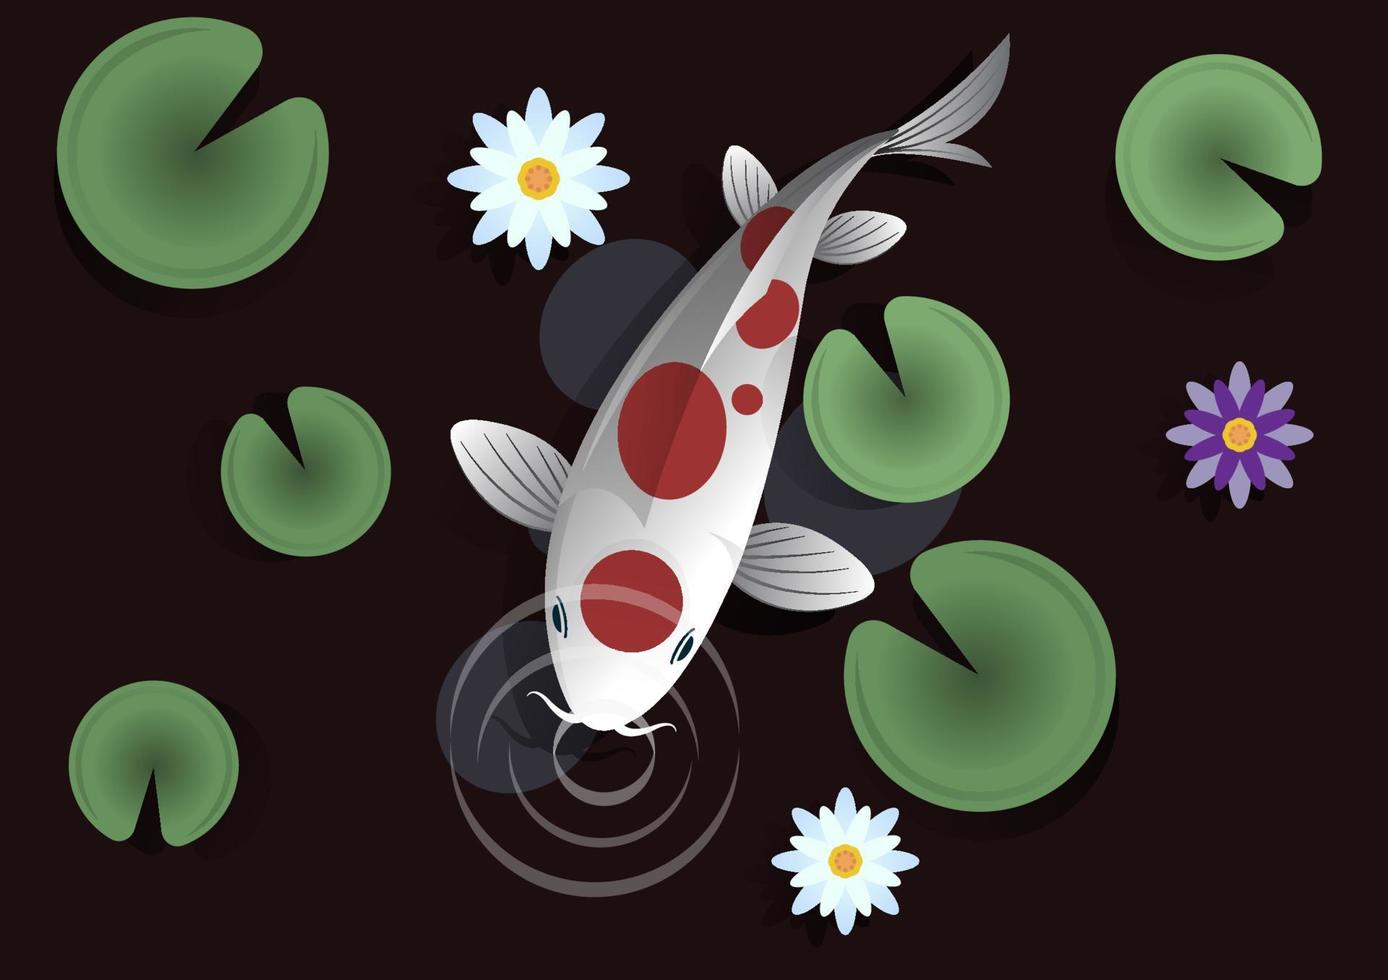 Rotgefleckte weiße Koi-Fische kommen, um im Fischteich die Luft zu schnuppern. im teich gibt es lotusblätter und schöne lotusblumen. flache Artillustration der Vektorkarikatur vektor